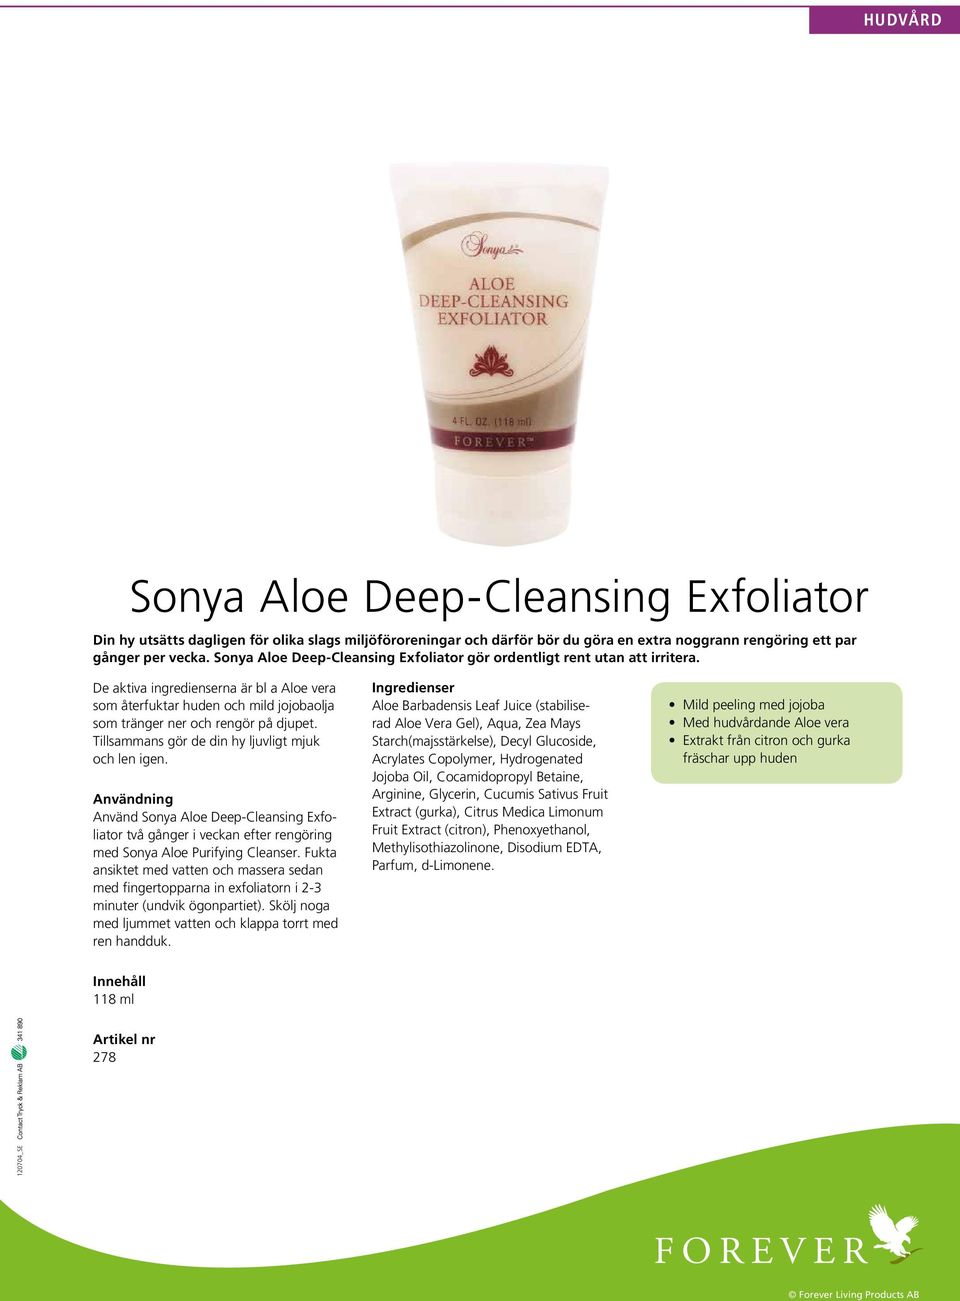 Tillsammans gör de din hy ljuvligt mjuk och len igen. Användning Använd Sonya Aloe Deep-Cleansing Exfoliator två gånger i veckan efter rengöring med Sonya Aloe Purifying Cleanser.